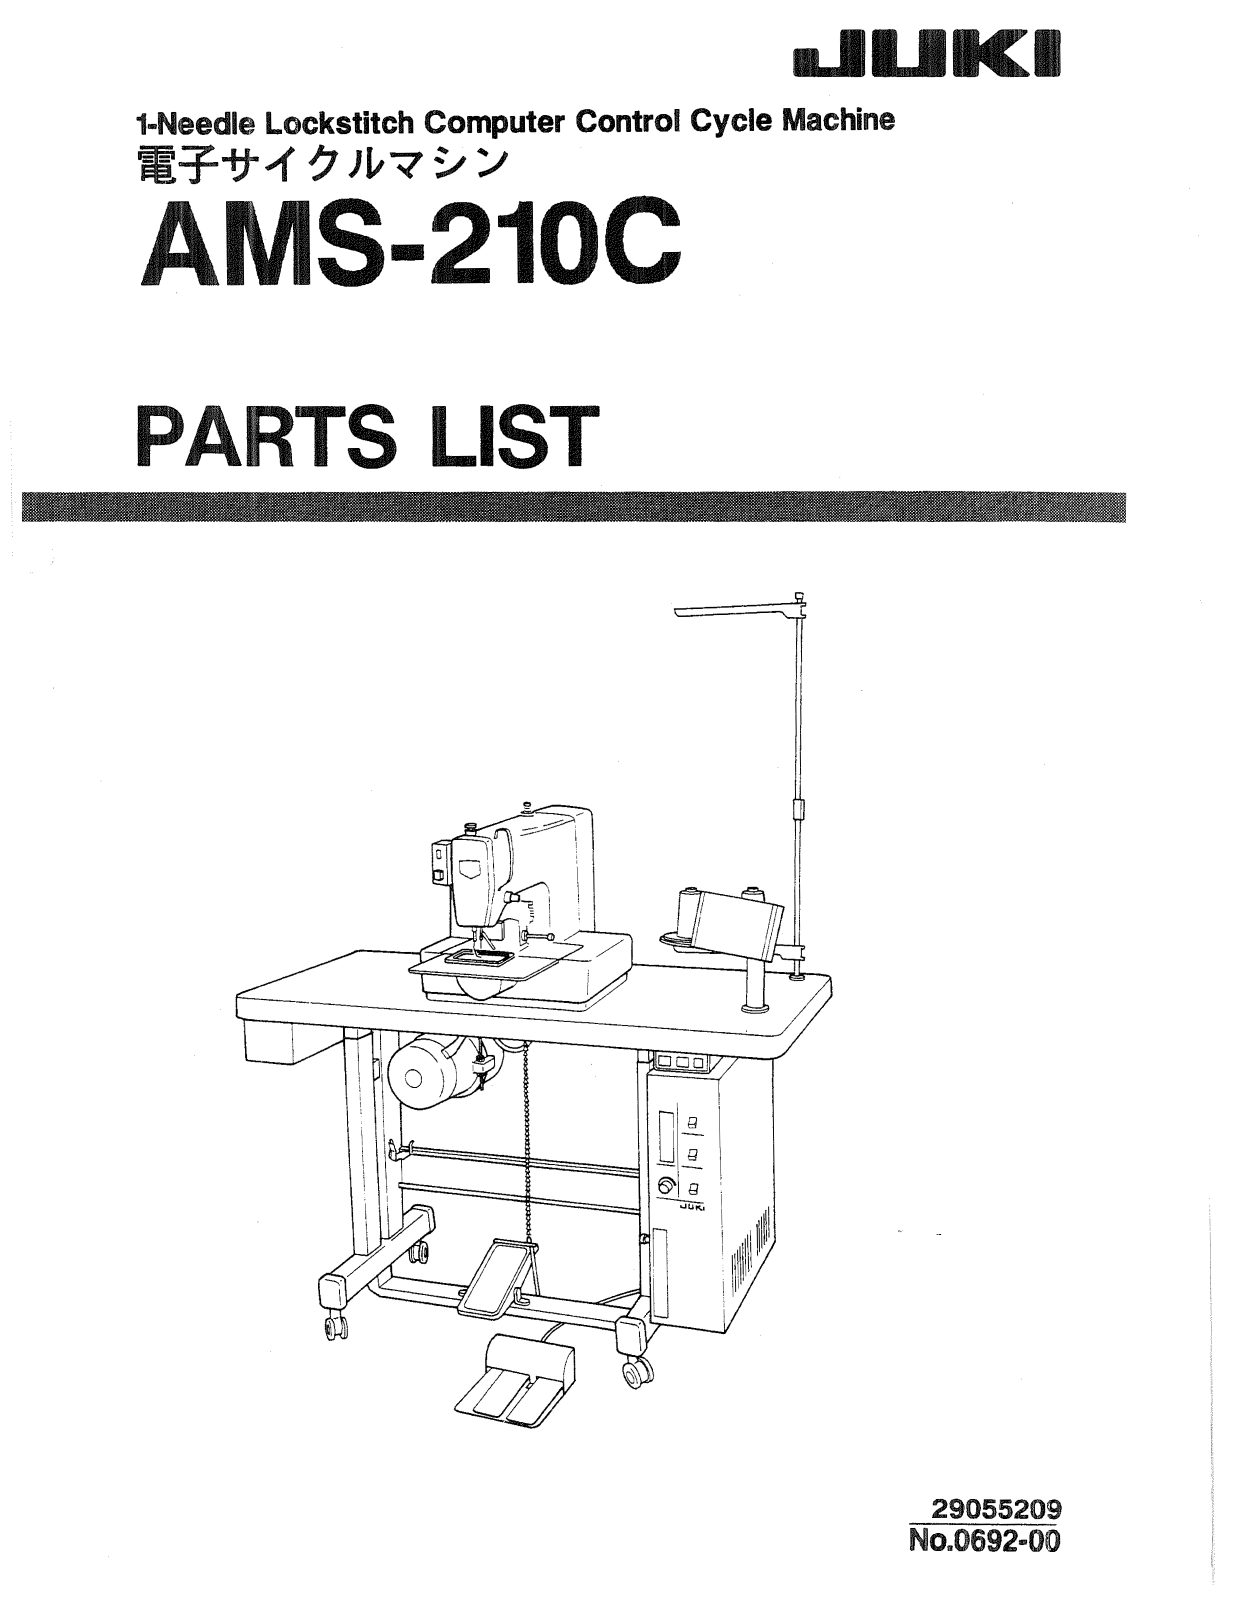 JUKI AMS-210C Parts List